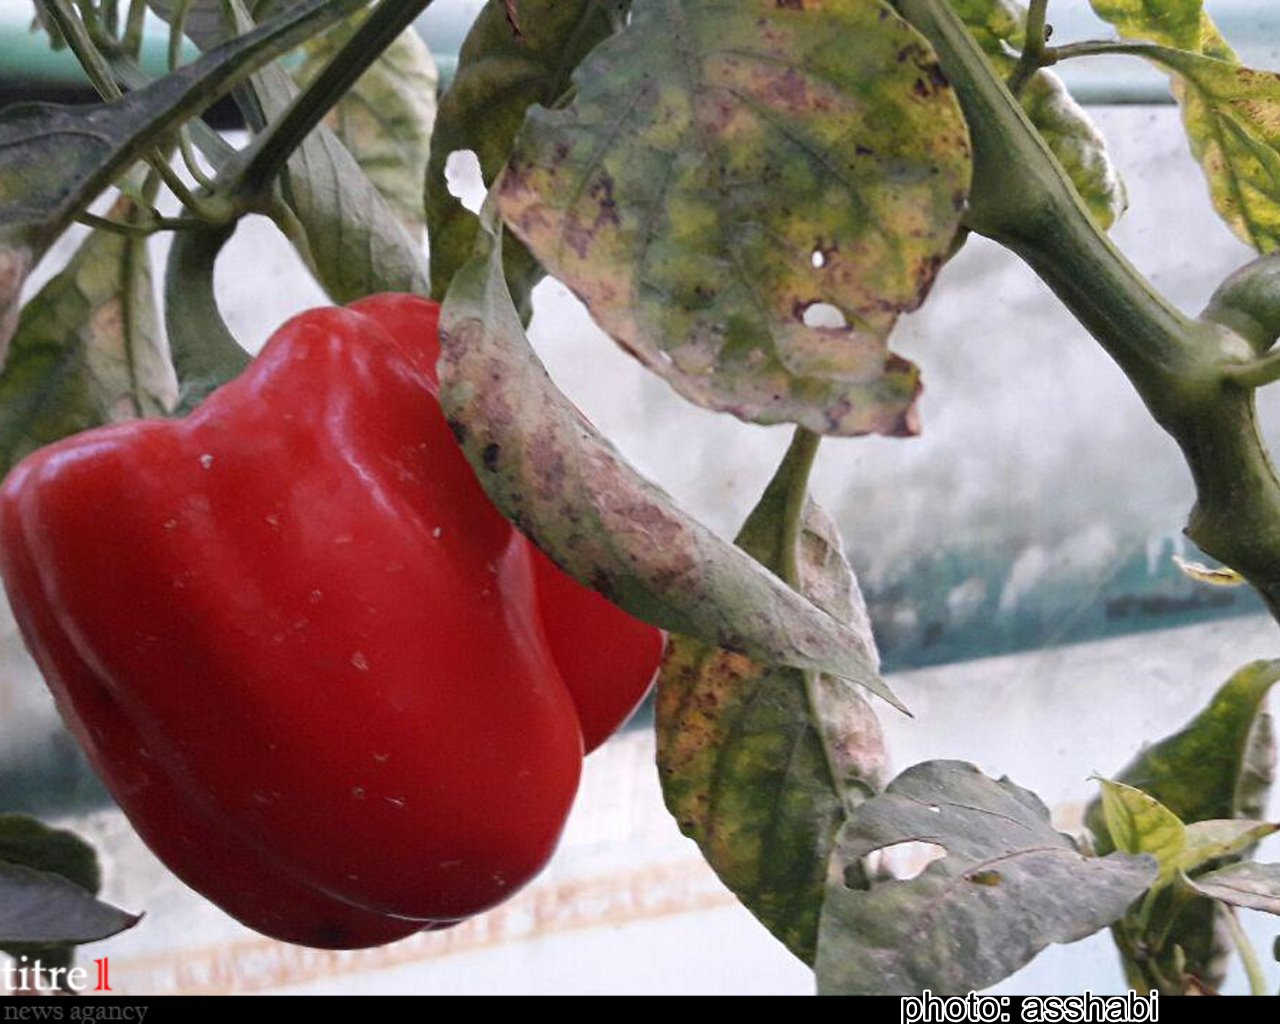 واردات میوه خارجی کمر باغداران را می شکند/ یگانه سبزه پرور: درآمد سالانه حداقل 60 میلیون محصول اراده ماست/ مدرک گرایی آفت جدی اشتغال جوانان کشور